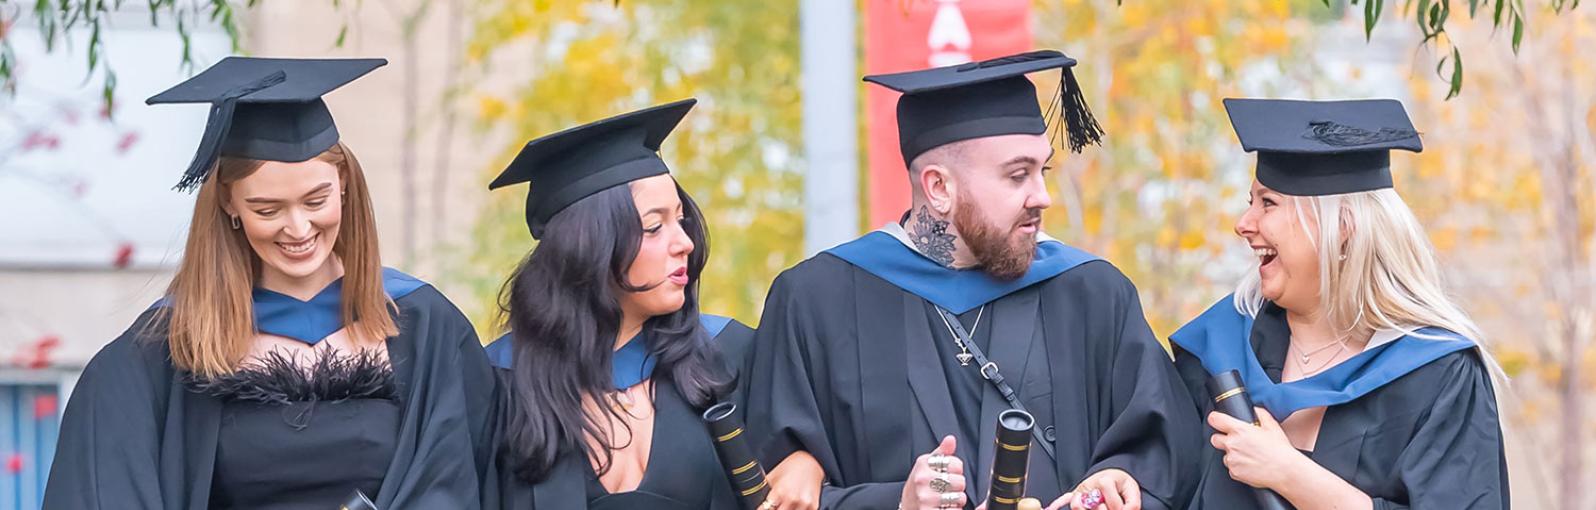 Four graduates celebrating on campus